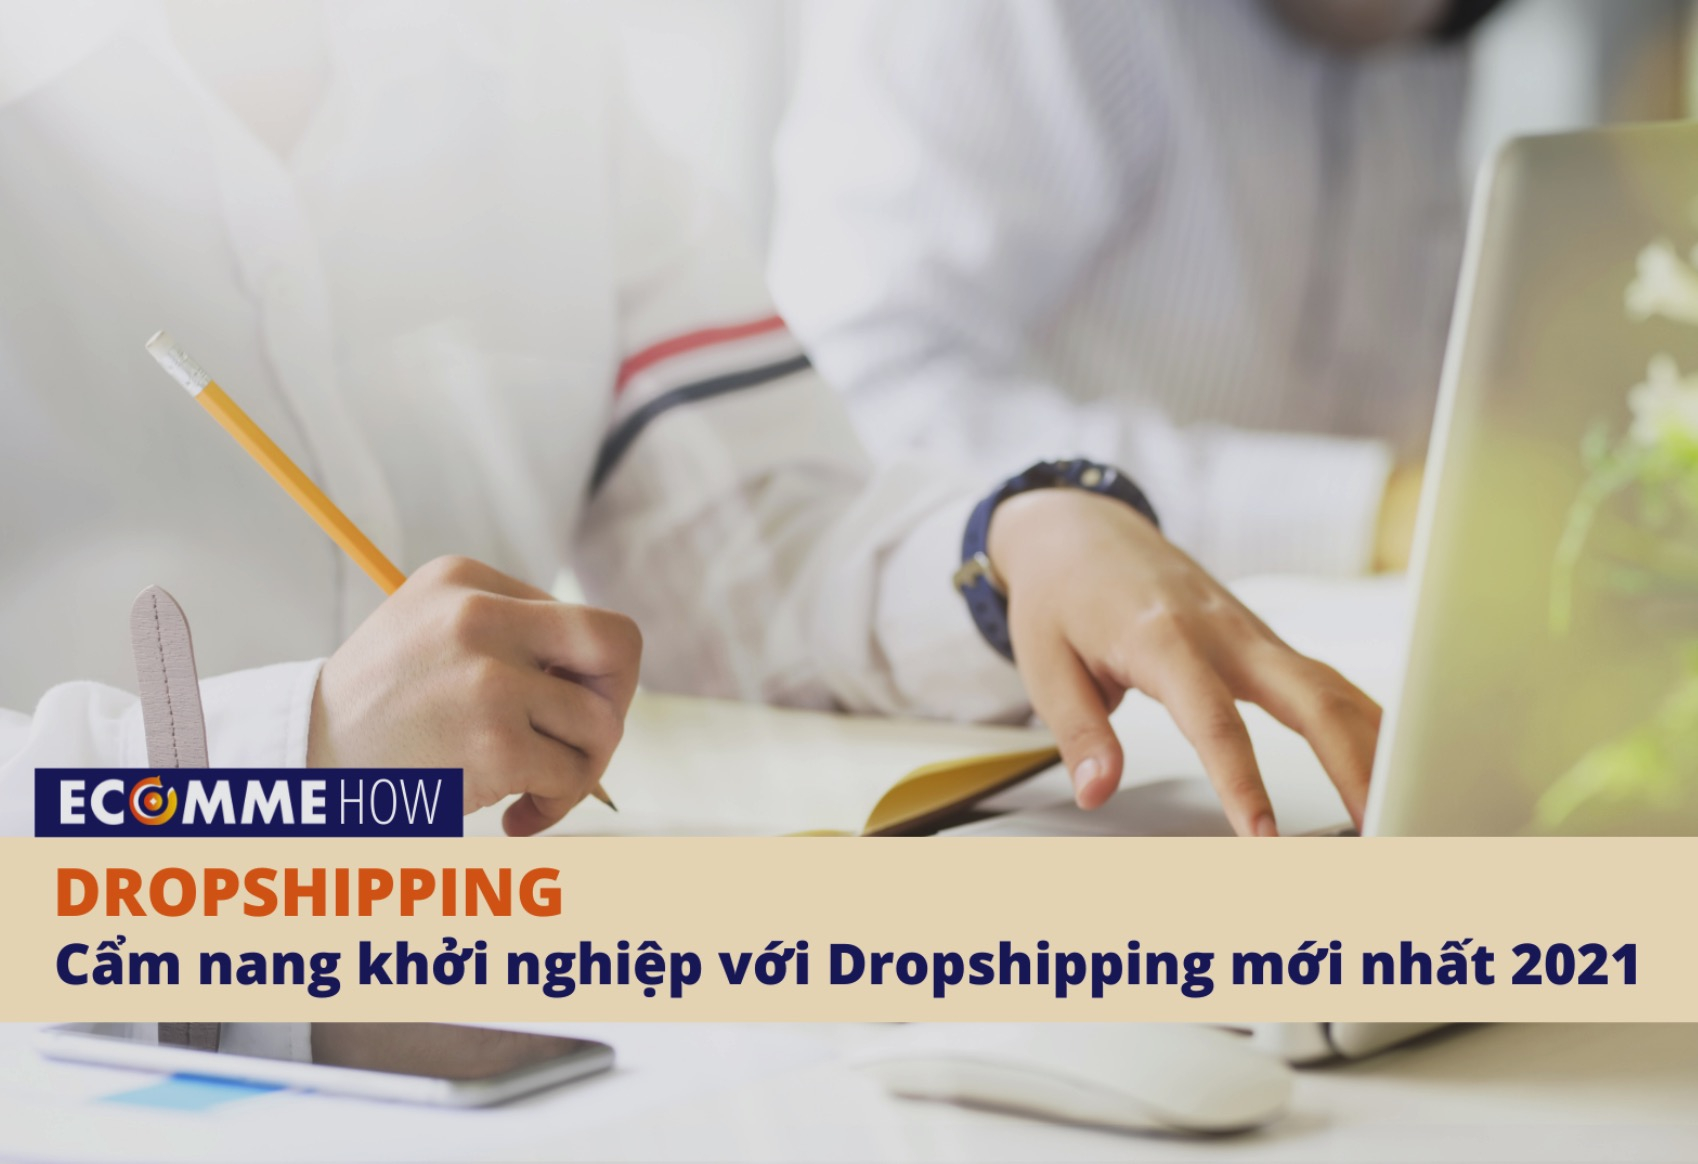 Cẩm nang khởi nghiệp với Dropshipping mới nhất 2021